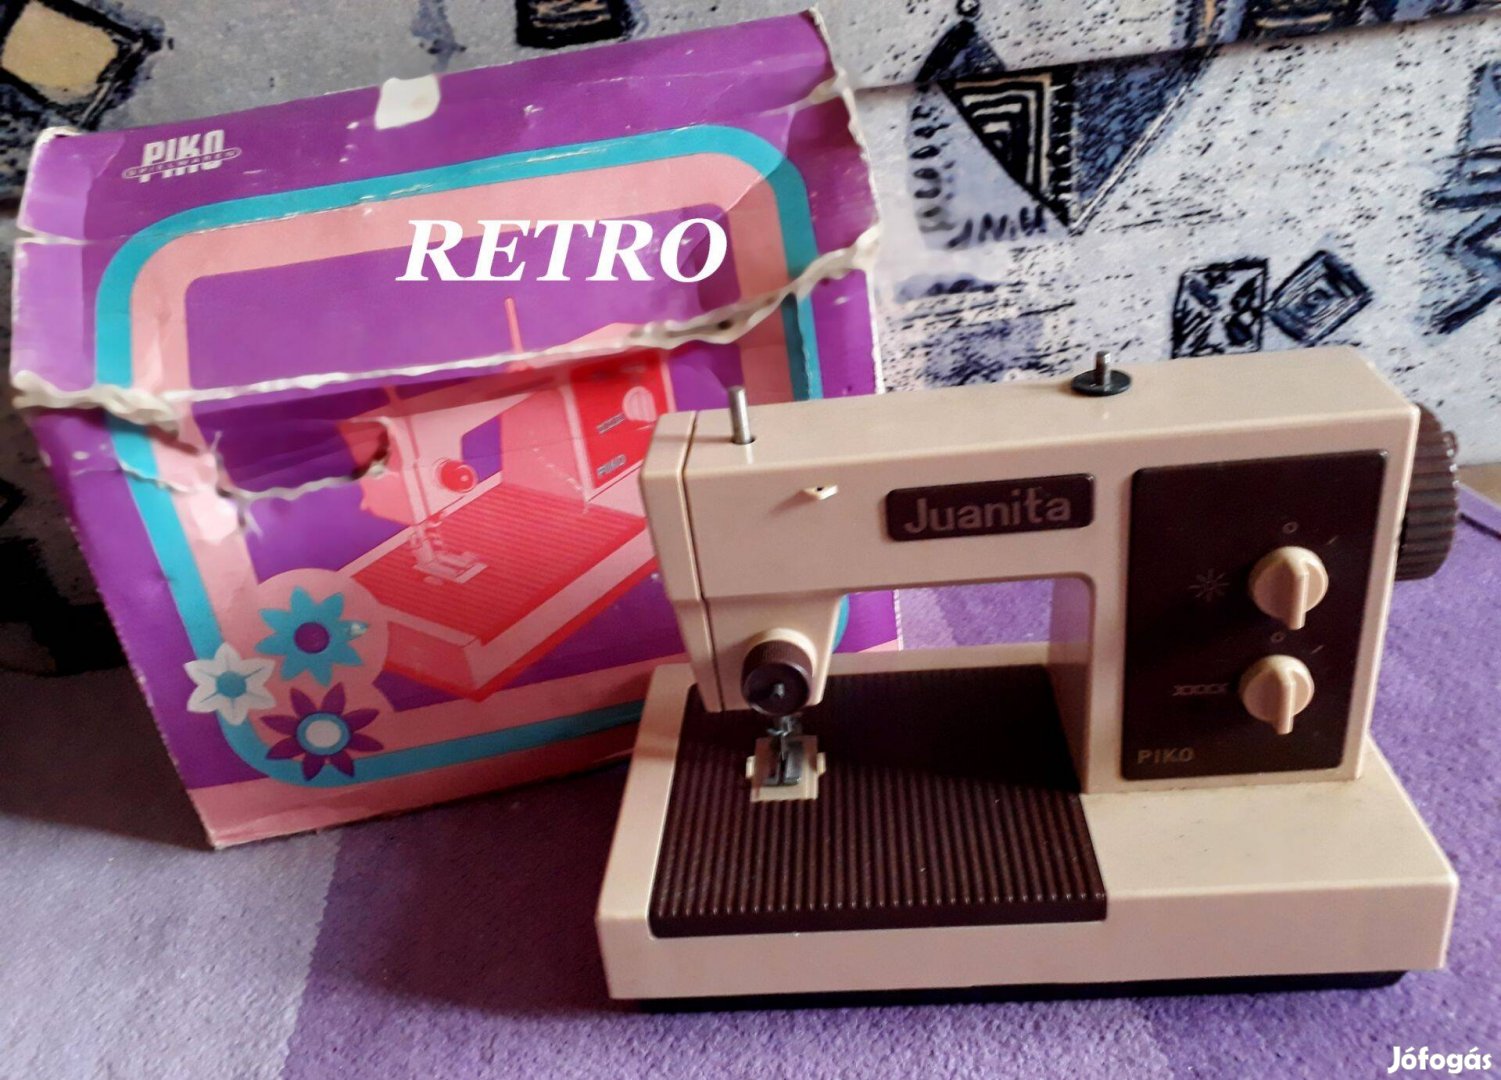 Retro Piko Játék Varrógép (1980-as évek)